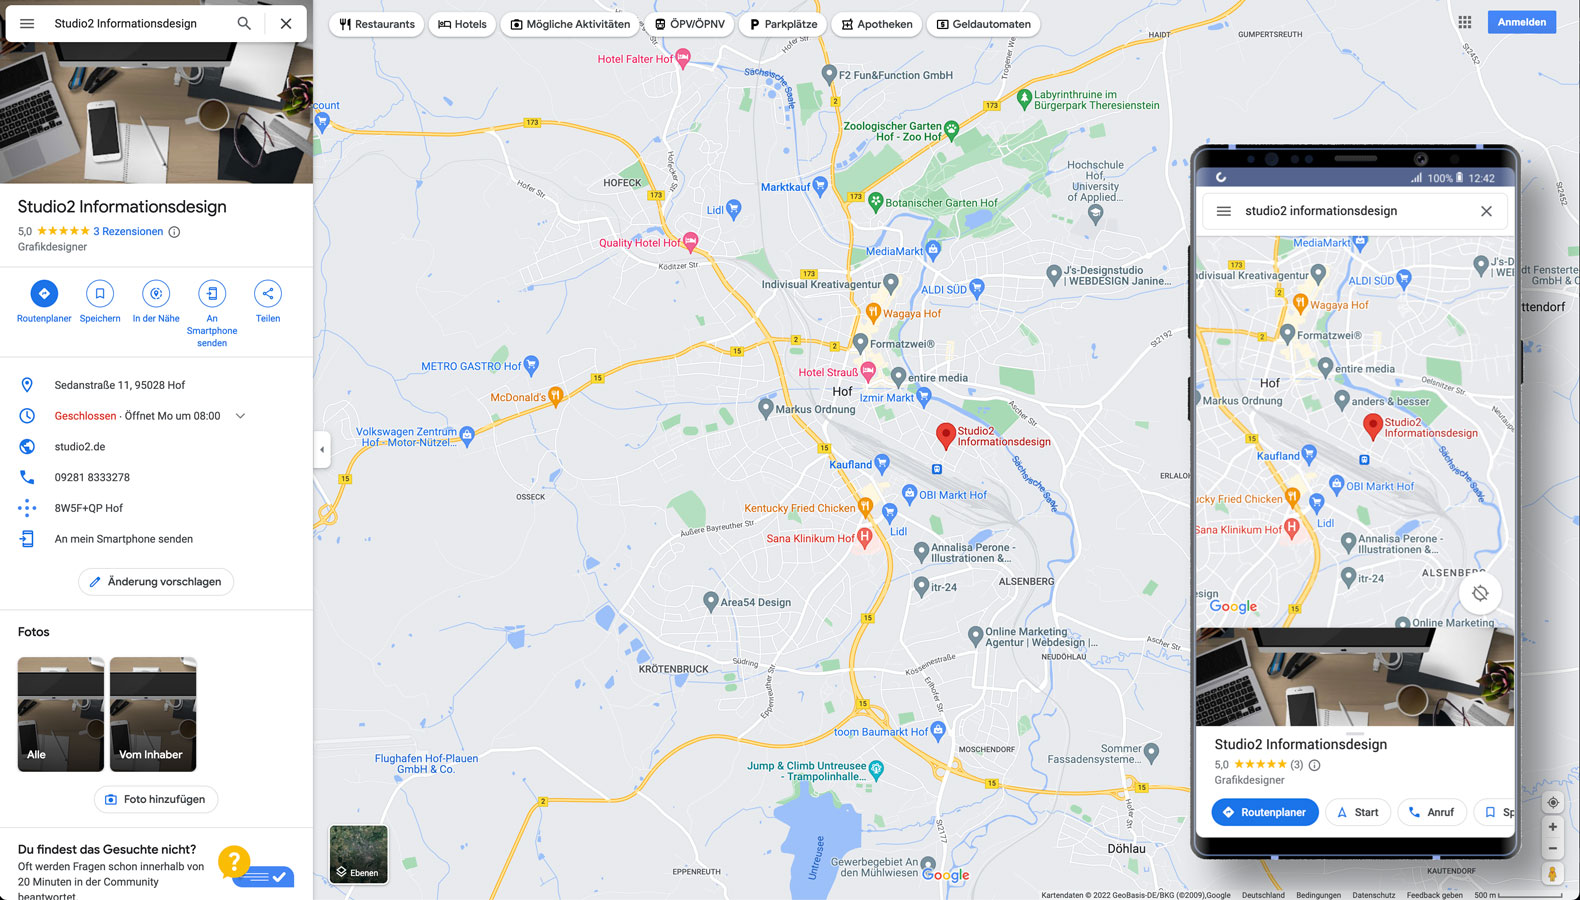 Auch Google Maps greift auf das Unternehmensprofil zurück